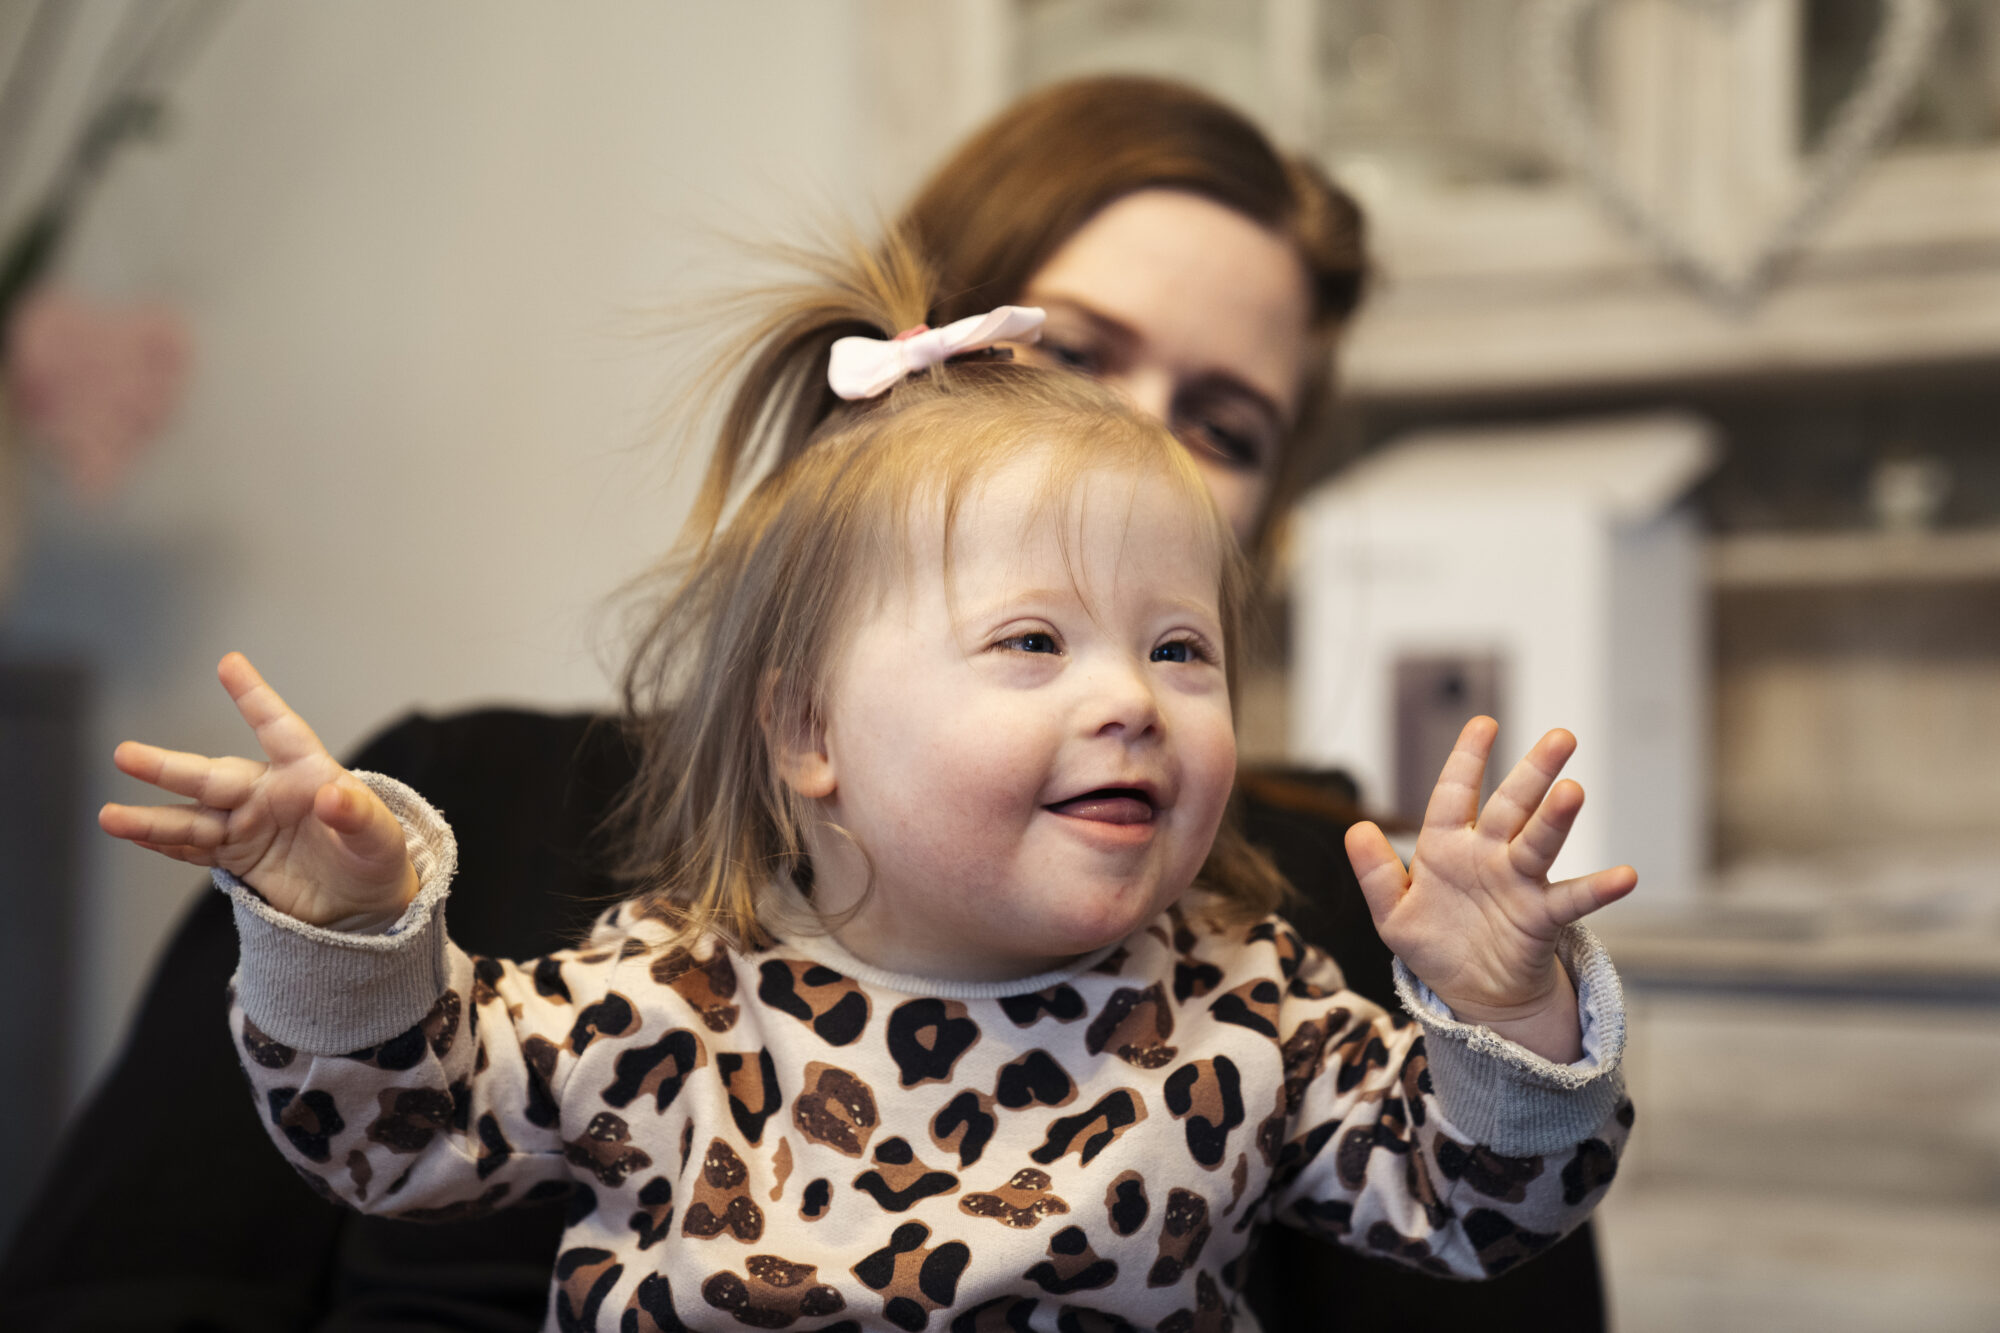 Ein kleines Mädchen mit Trisomie 21 hat die Hände erhoben und lächelt.